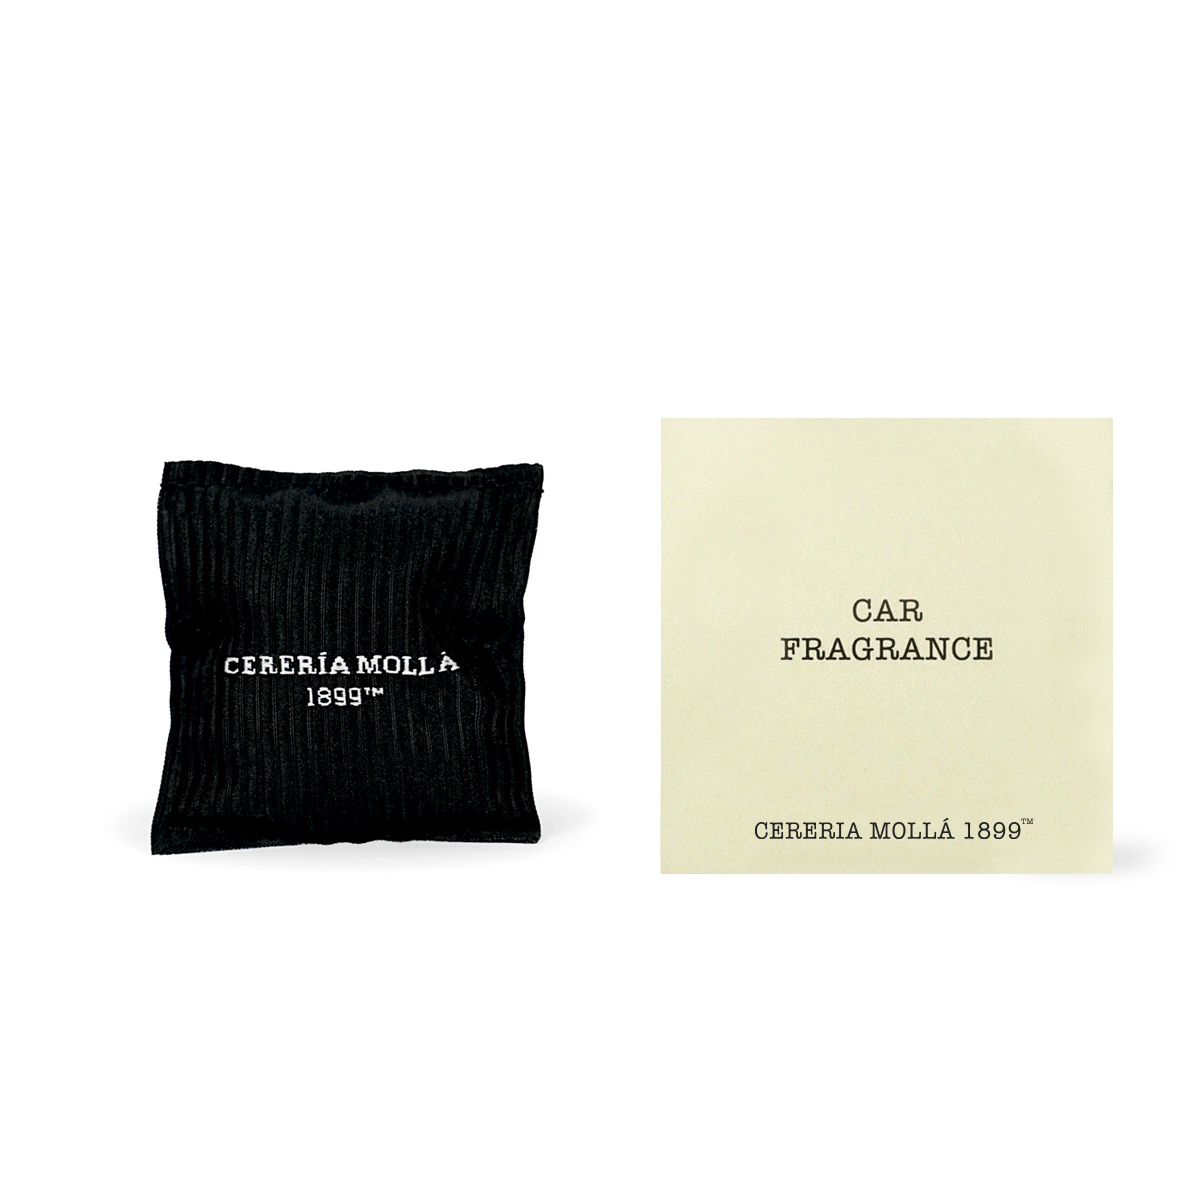 Car Fragrance 7cm X 6cm French Linen Gift